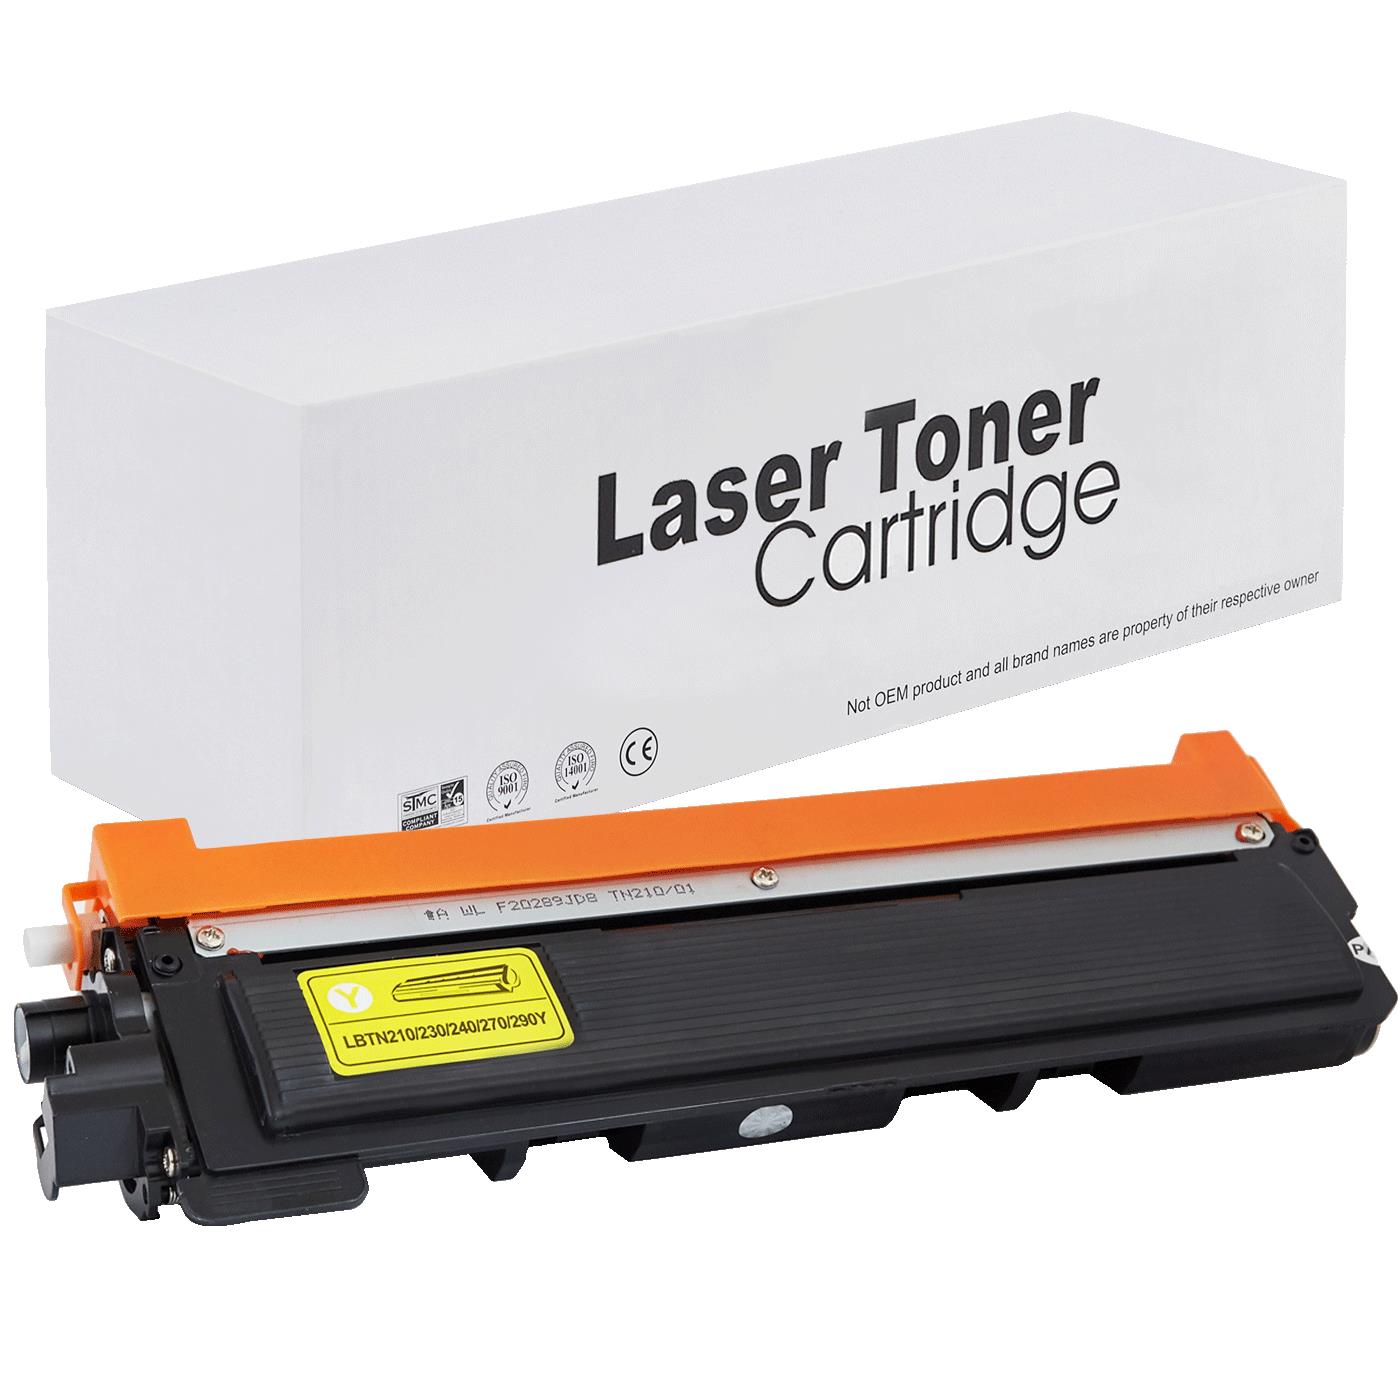 съвместима тонер касета за принтери и печатащи устройства на Brother DCP-9010CN Toner BR-230Y | TN230Y. Ниски цени, прецизно изпълнение, високо качество.